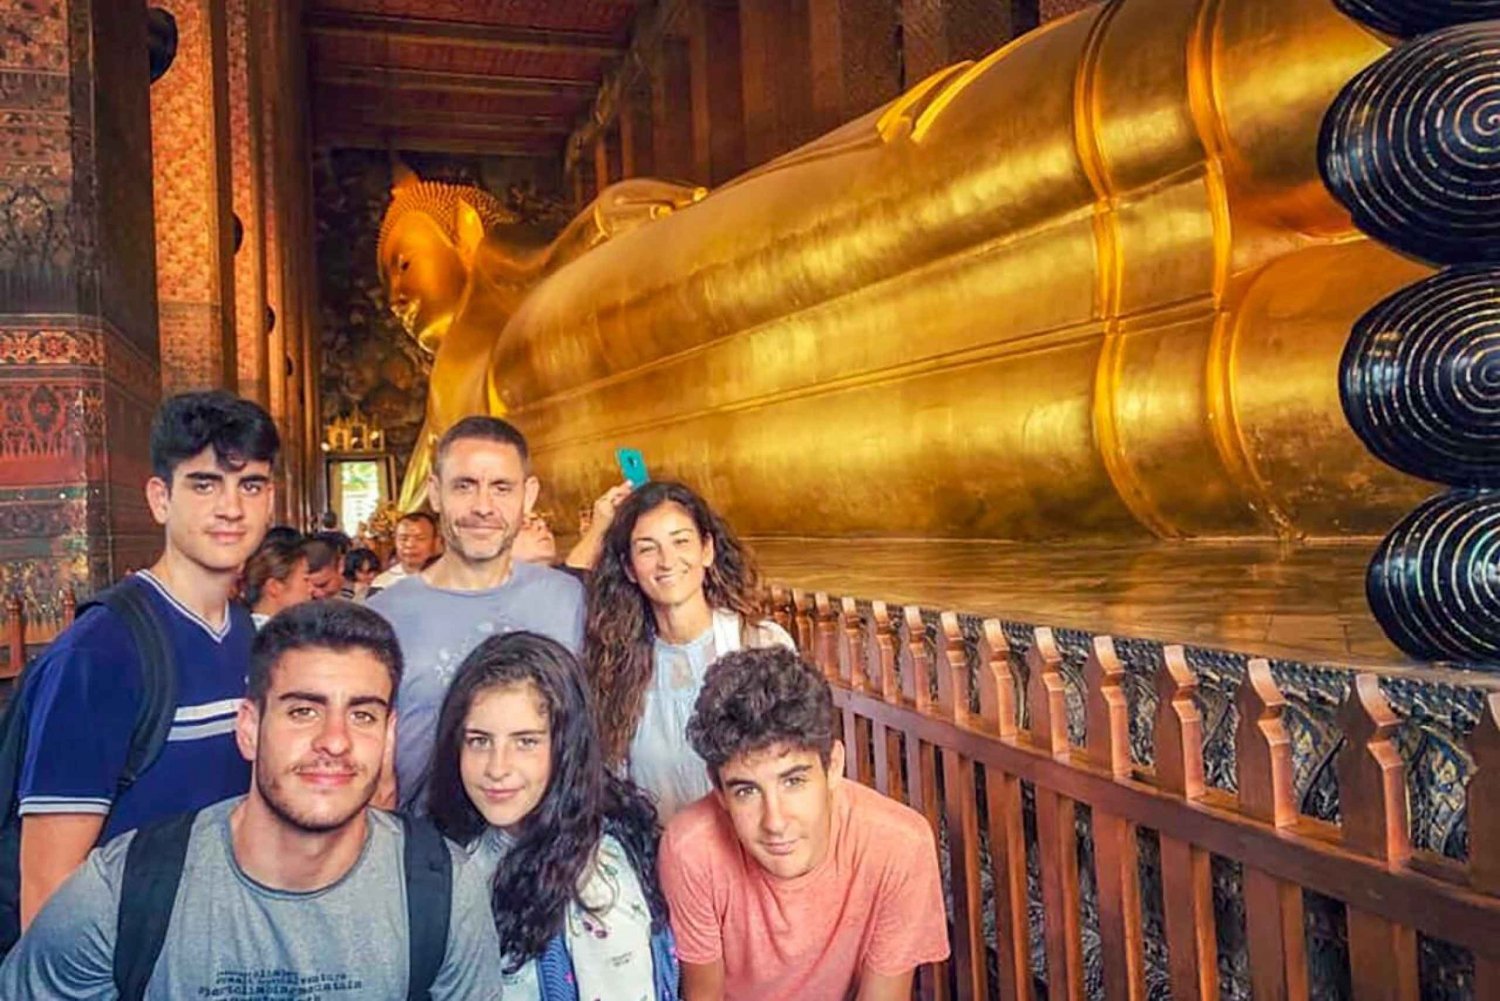 Grand Palace, Wat Pho und Wat Arun: Geführte Tour auf Spanisch